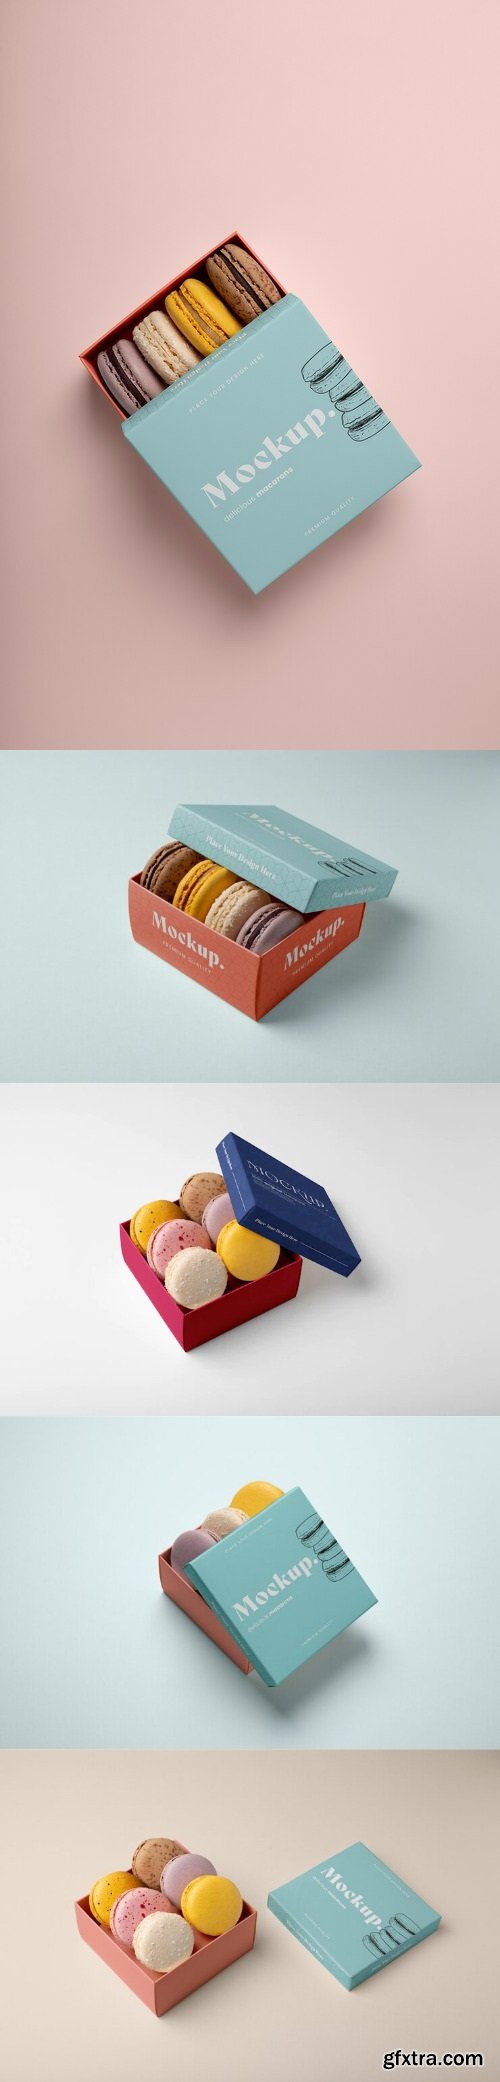 Dessert mockup box design